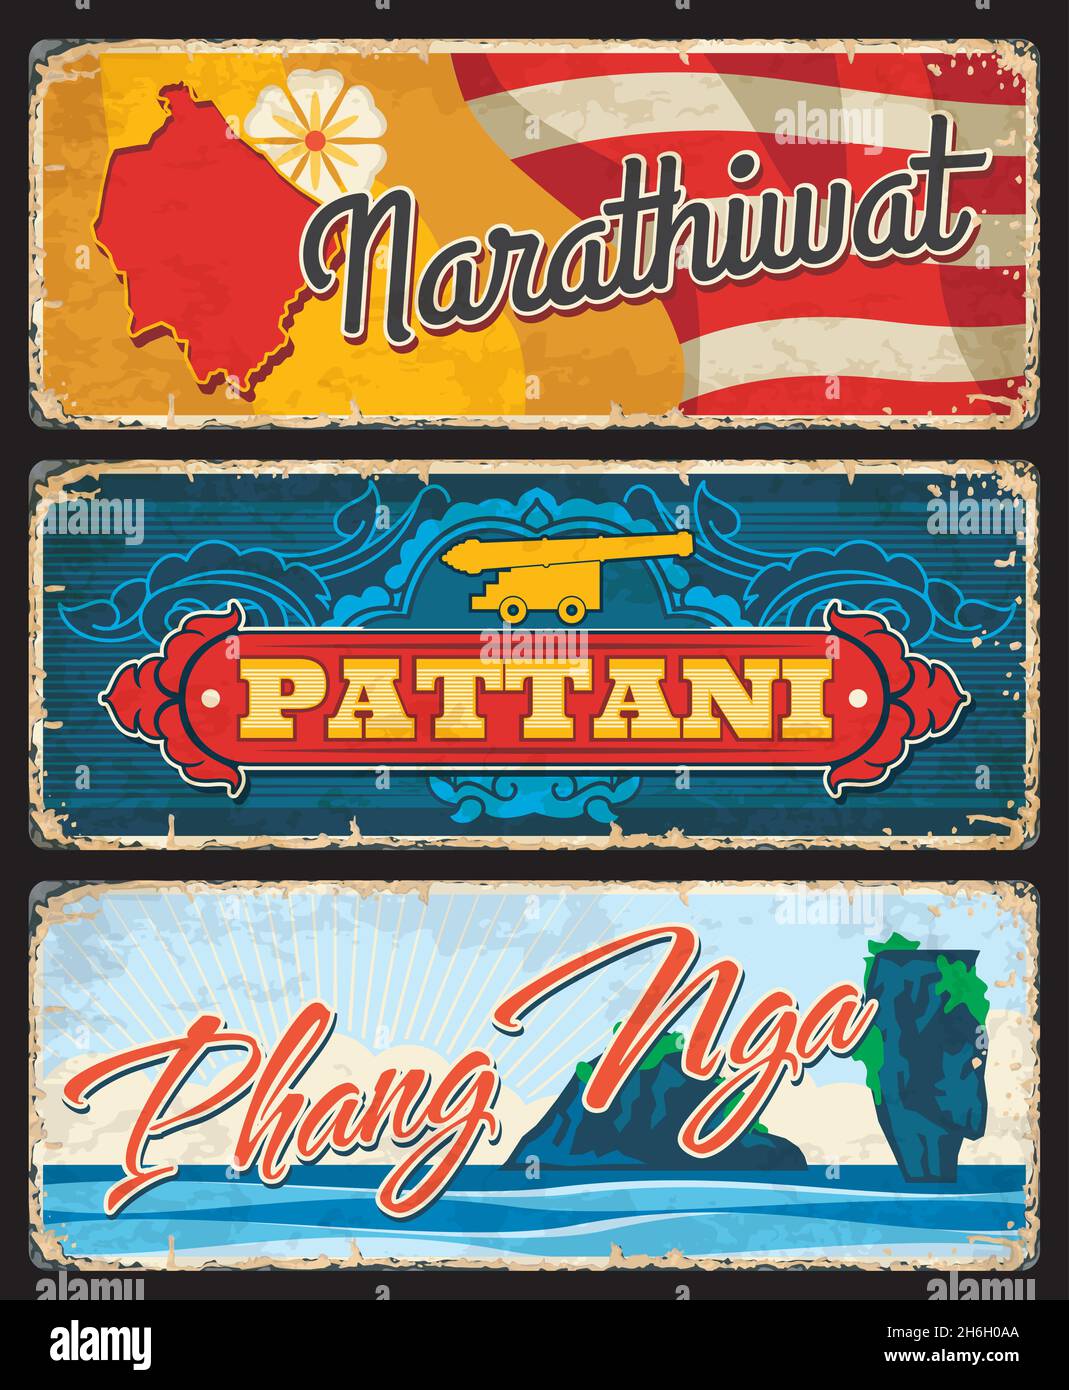 In den Provinzen Narathiwat, Pattani und Phang Nga Thailand wurden Vintage-Platten hergestellt. Thailand Provinzen grunge Reise Aufkleber, Zinn Schilder mit Gebiet Karte Silhouett Stock Vektor